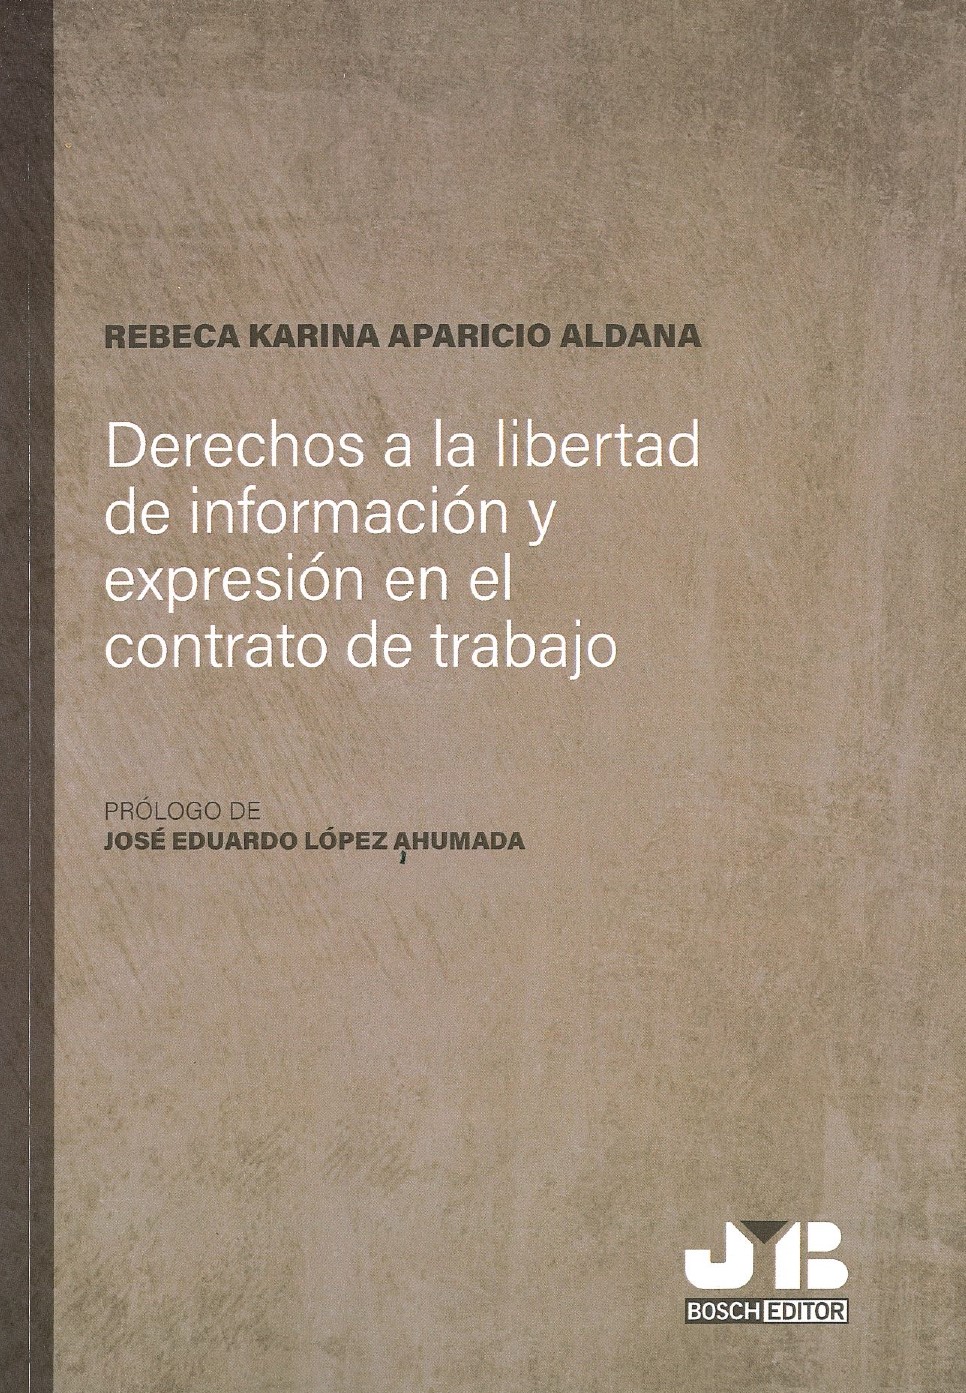 Imagen de portada del libro Derechos a la libertad de información y expresión en el contrato de trabajo